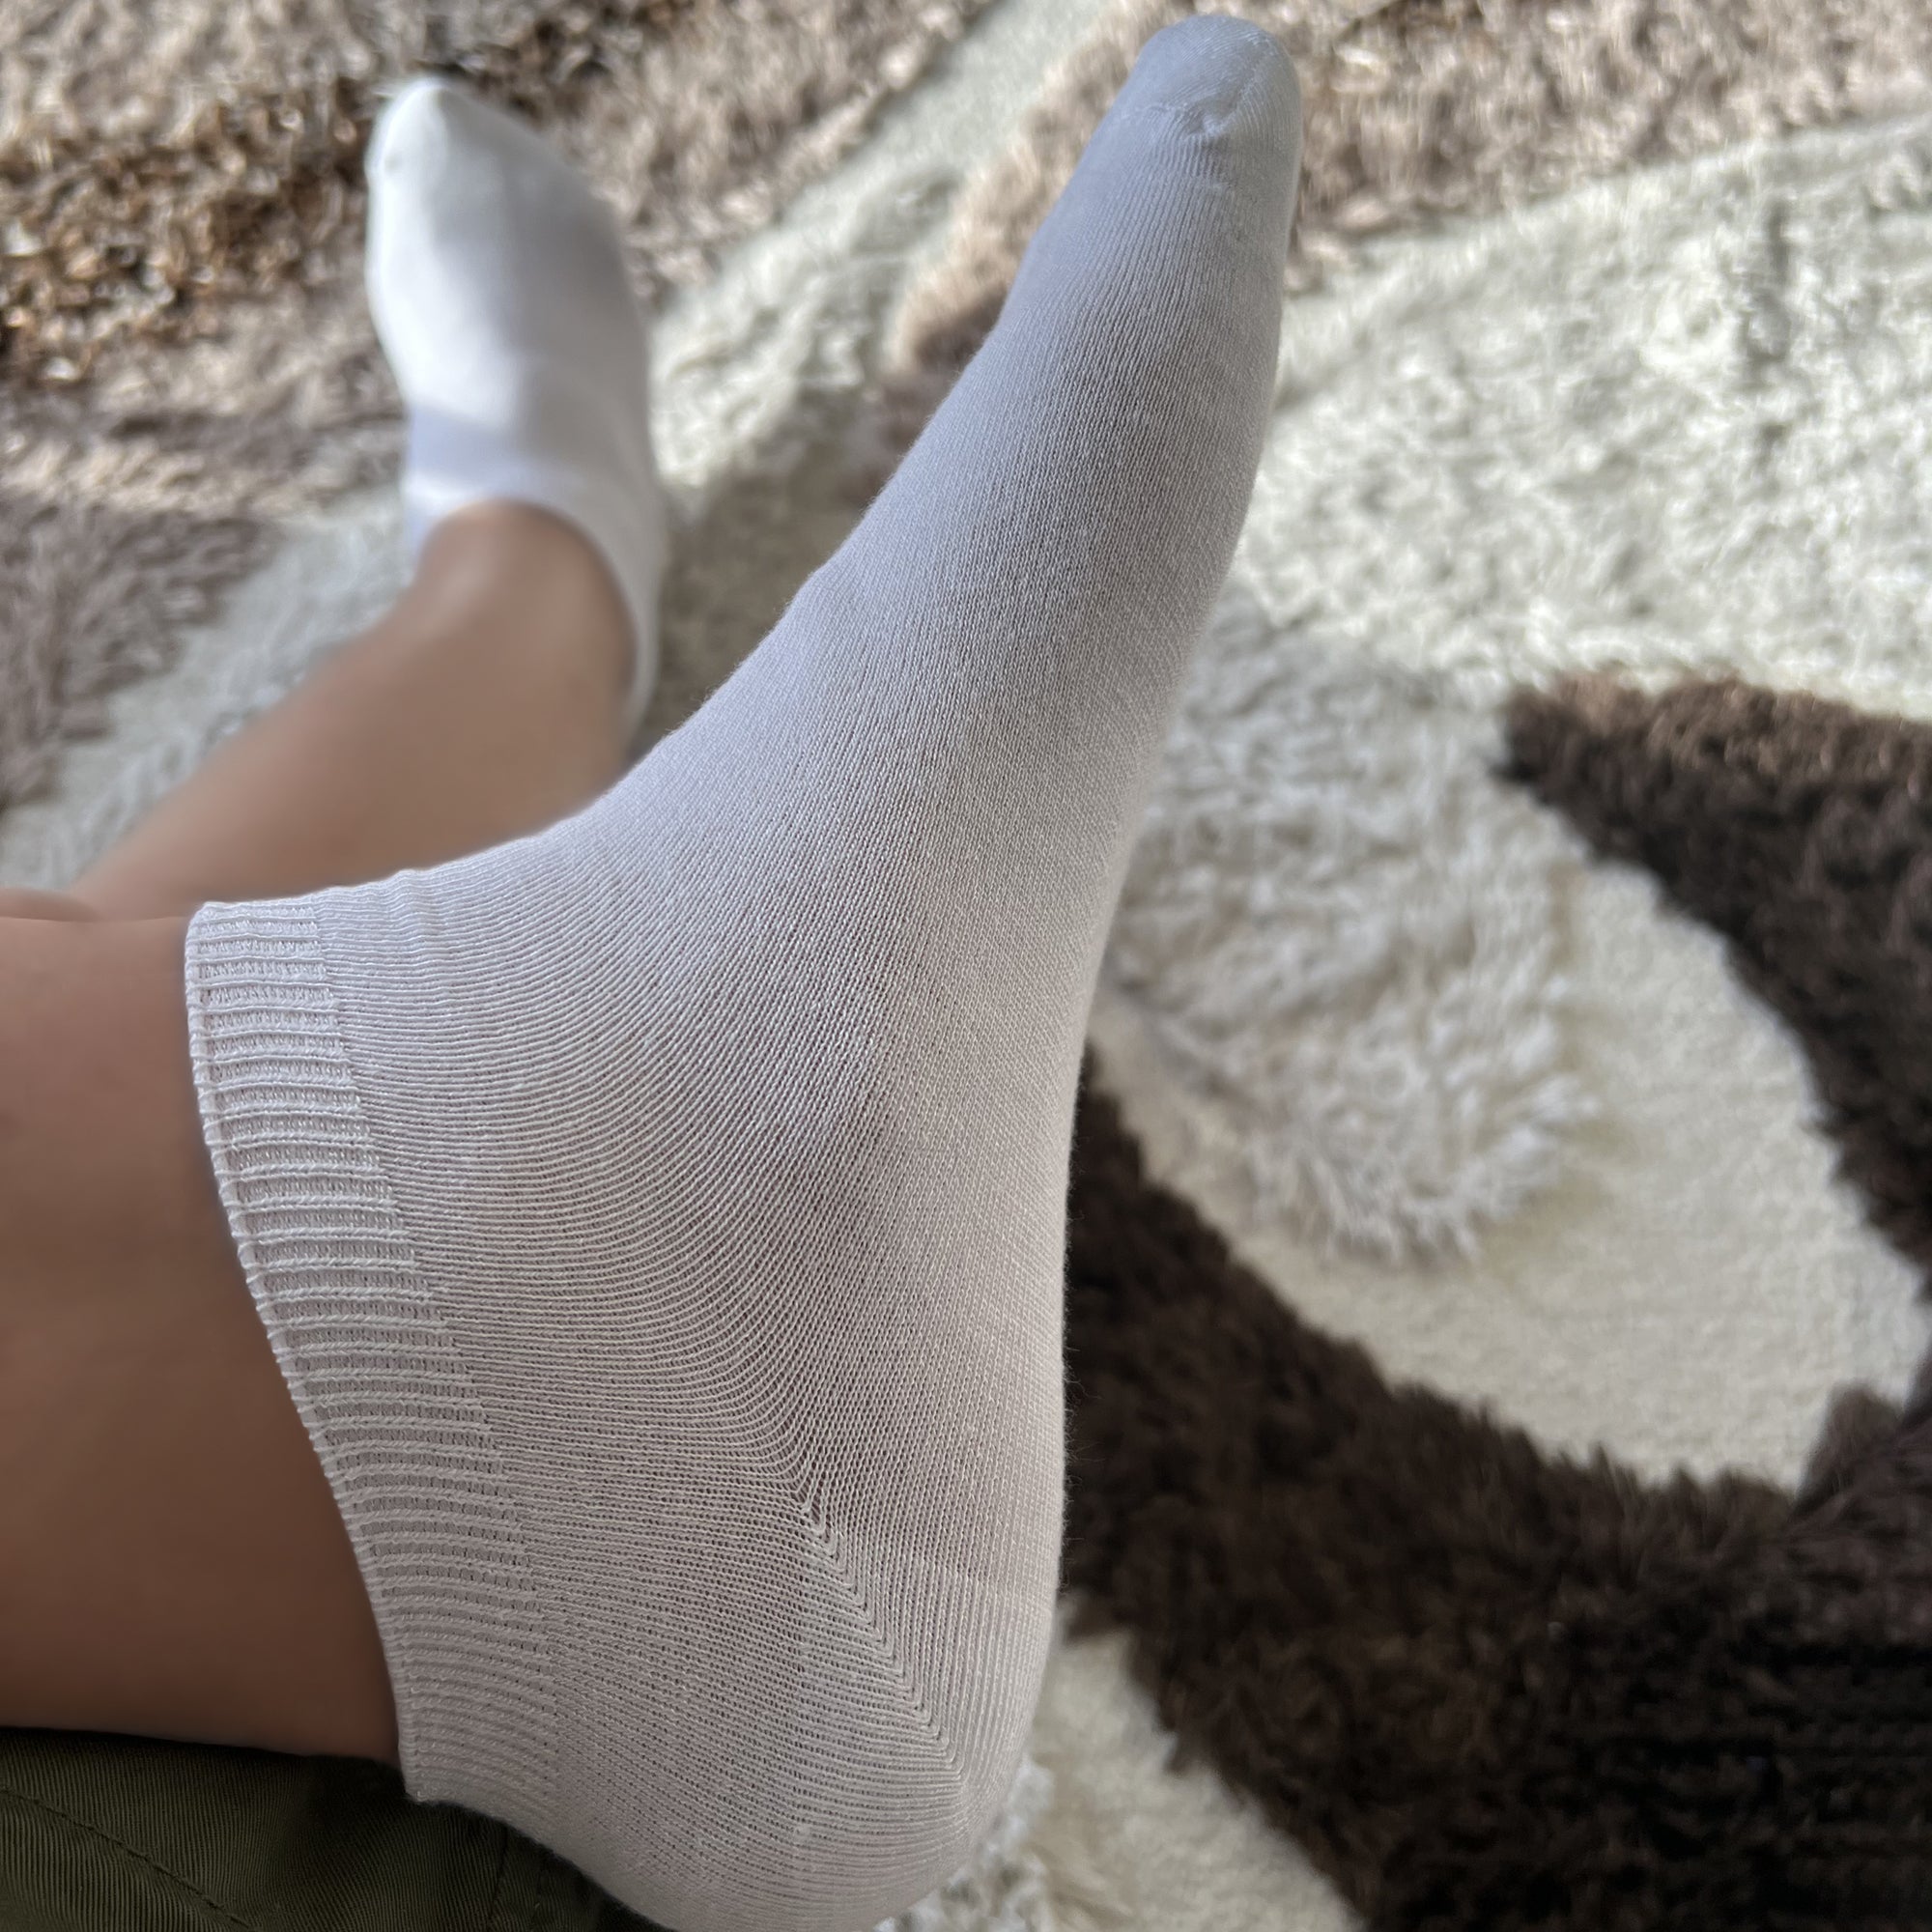 Louluu Men White Modal Low Cut Socks